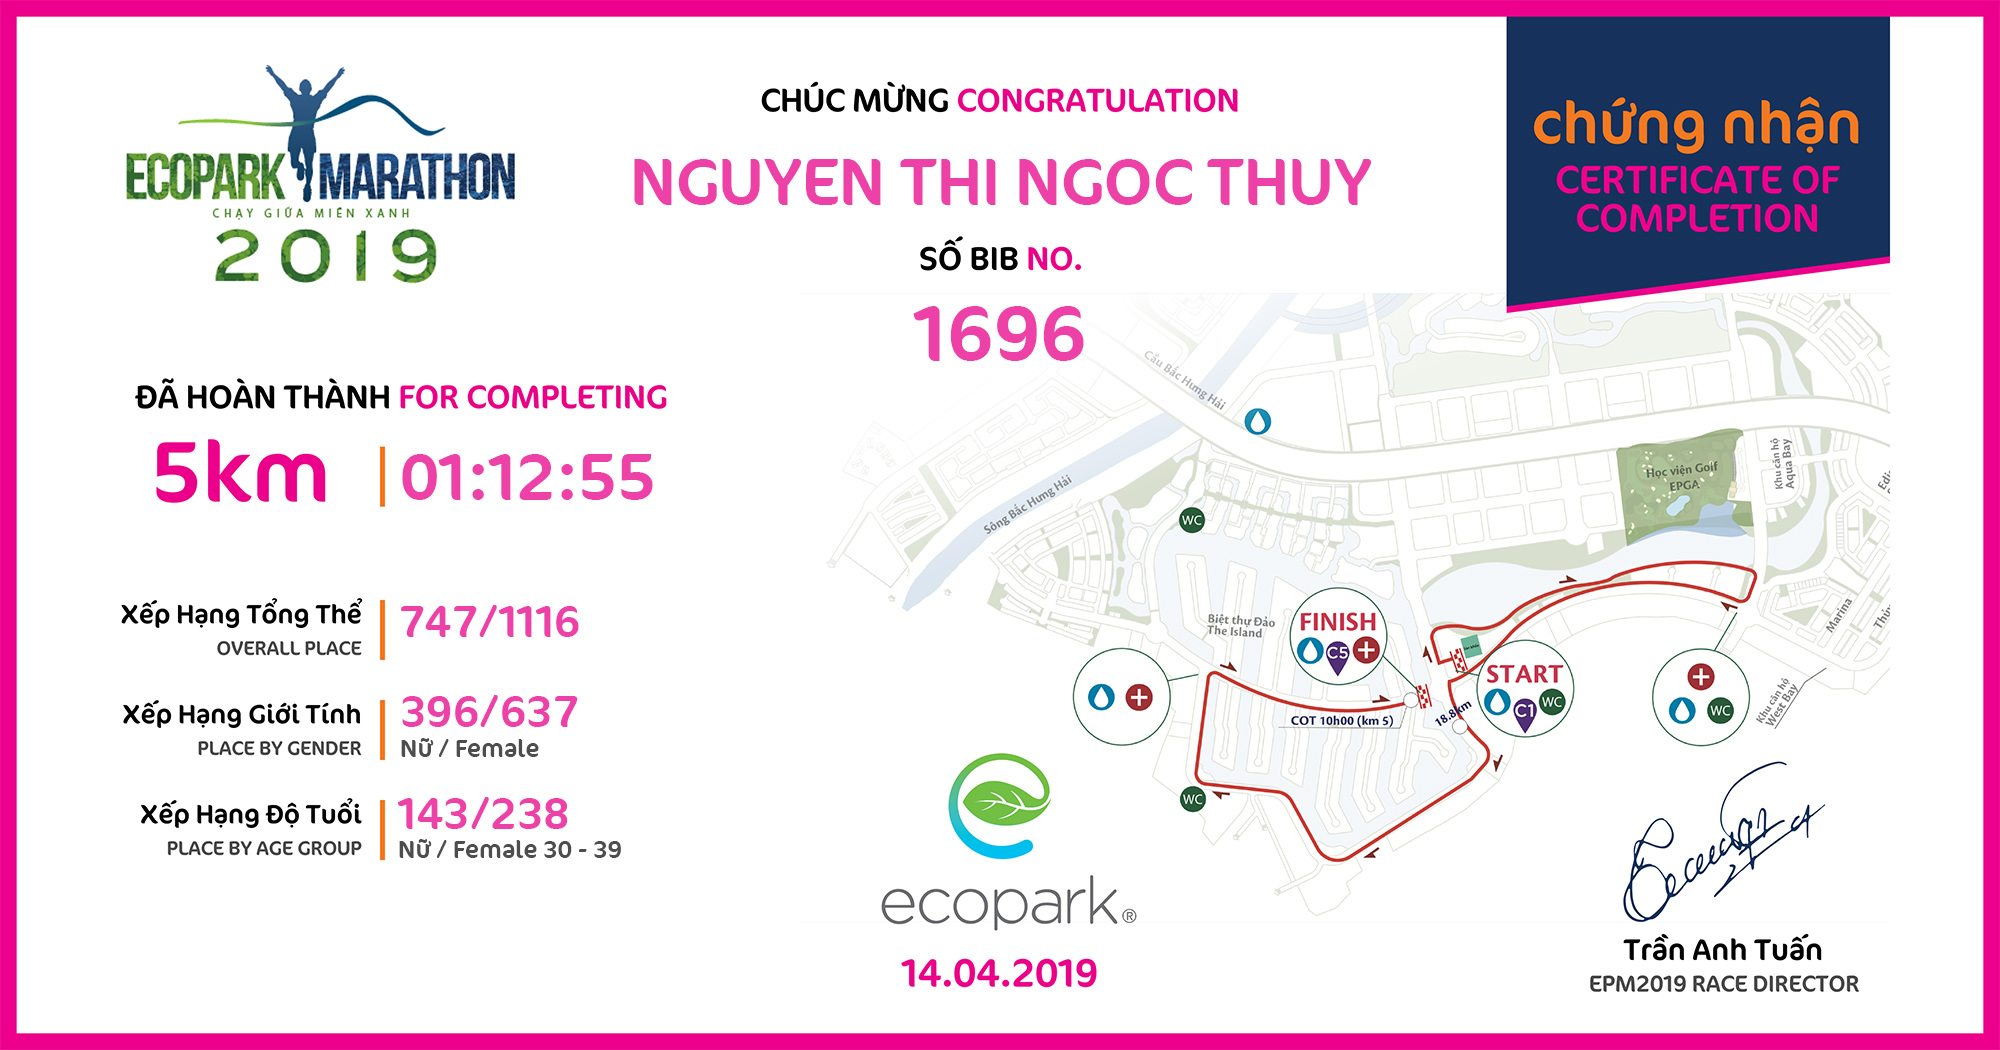 1696 - Nguyen Thi Ngoc Thuy